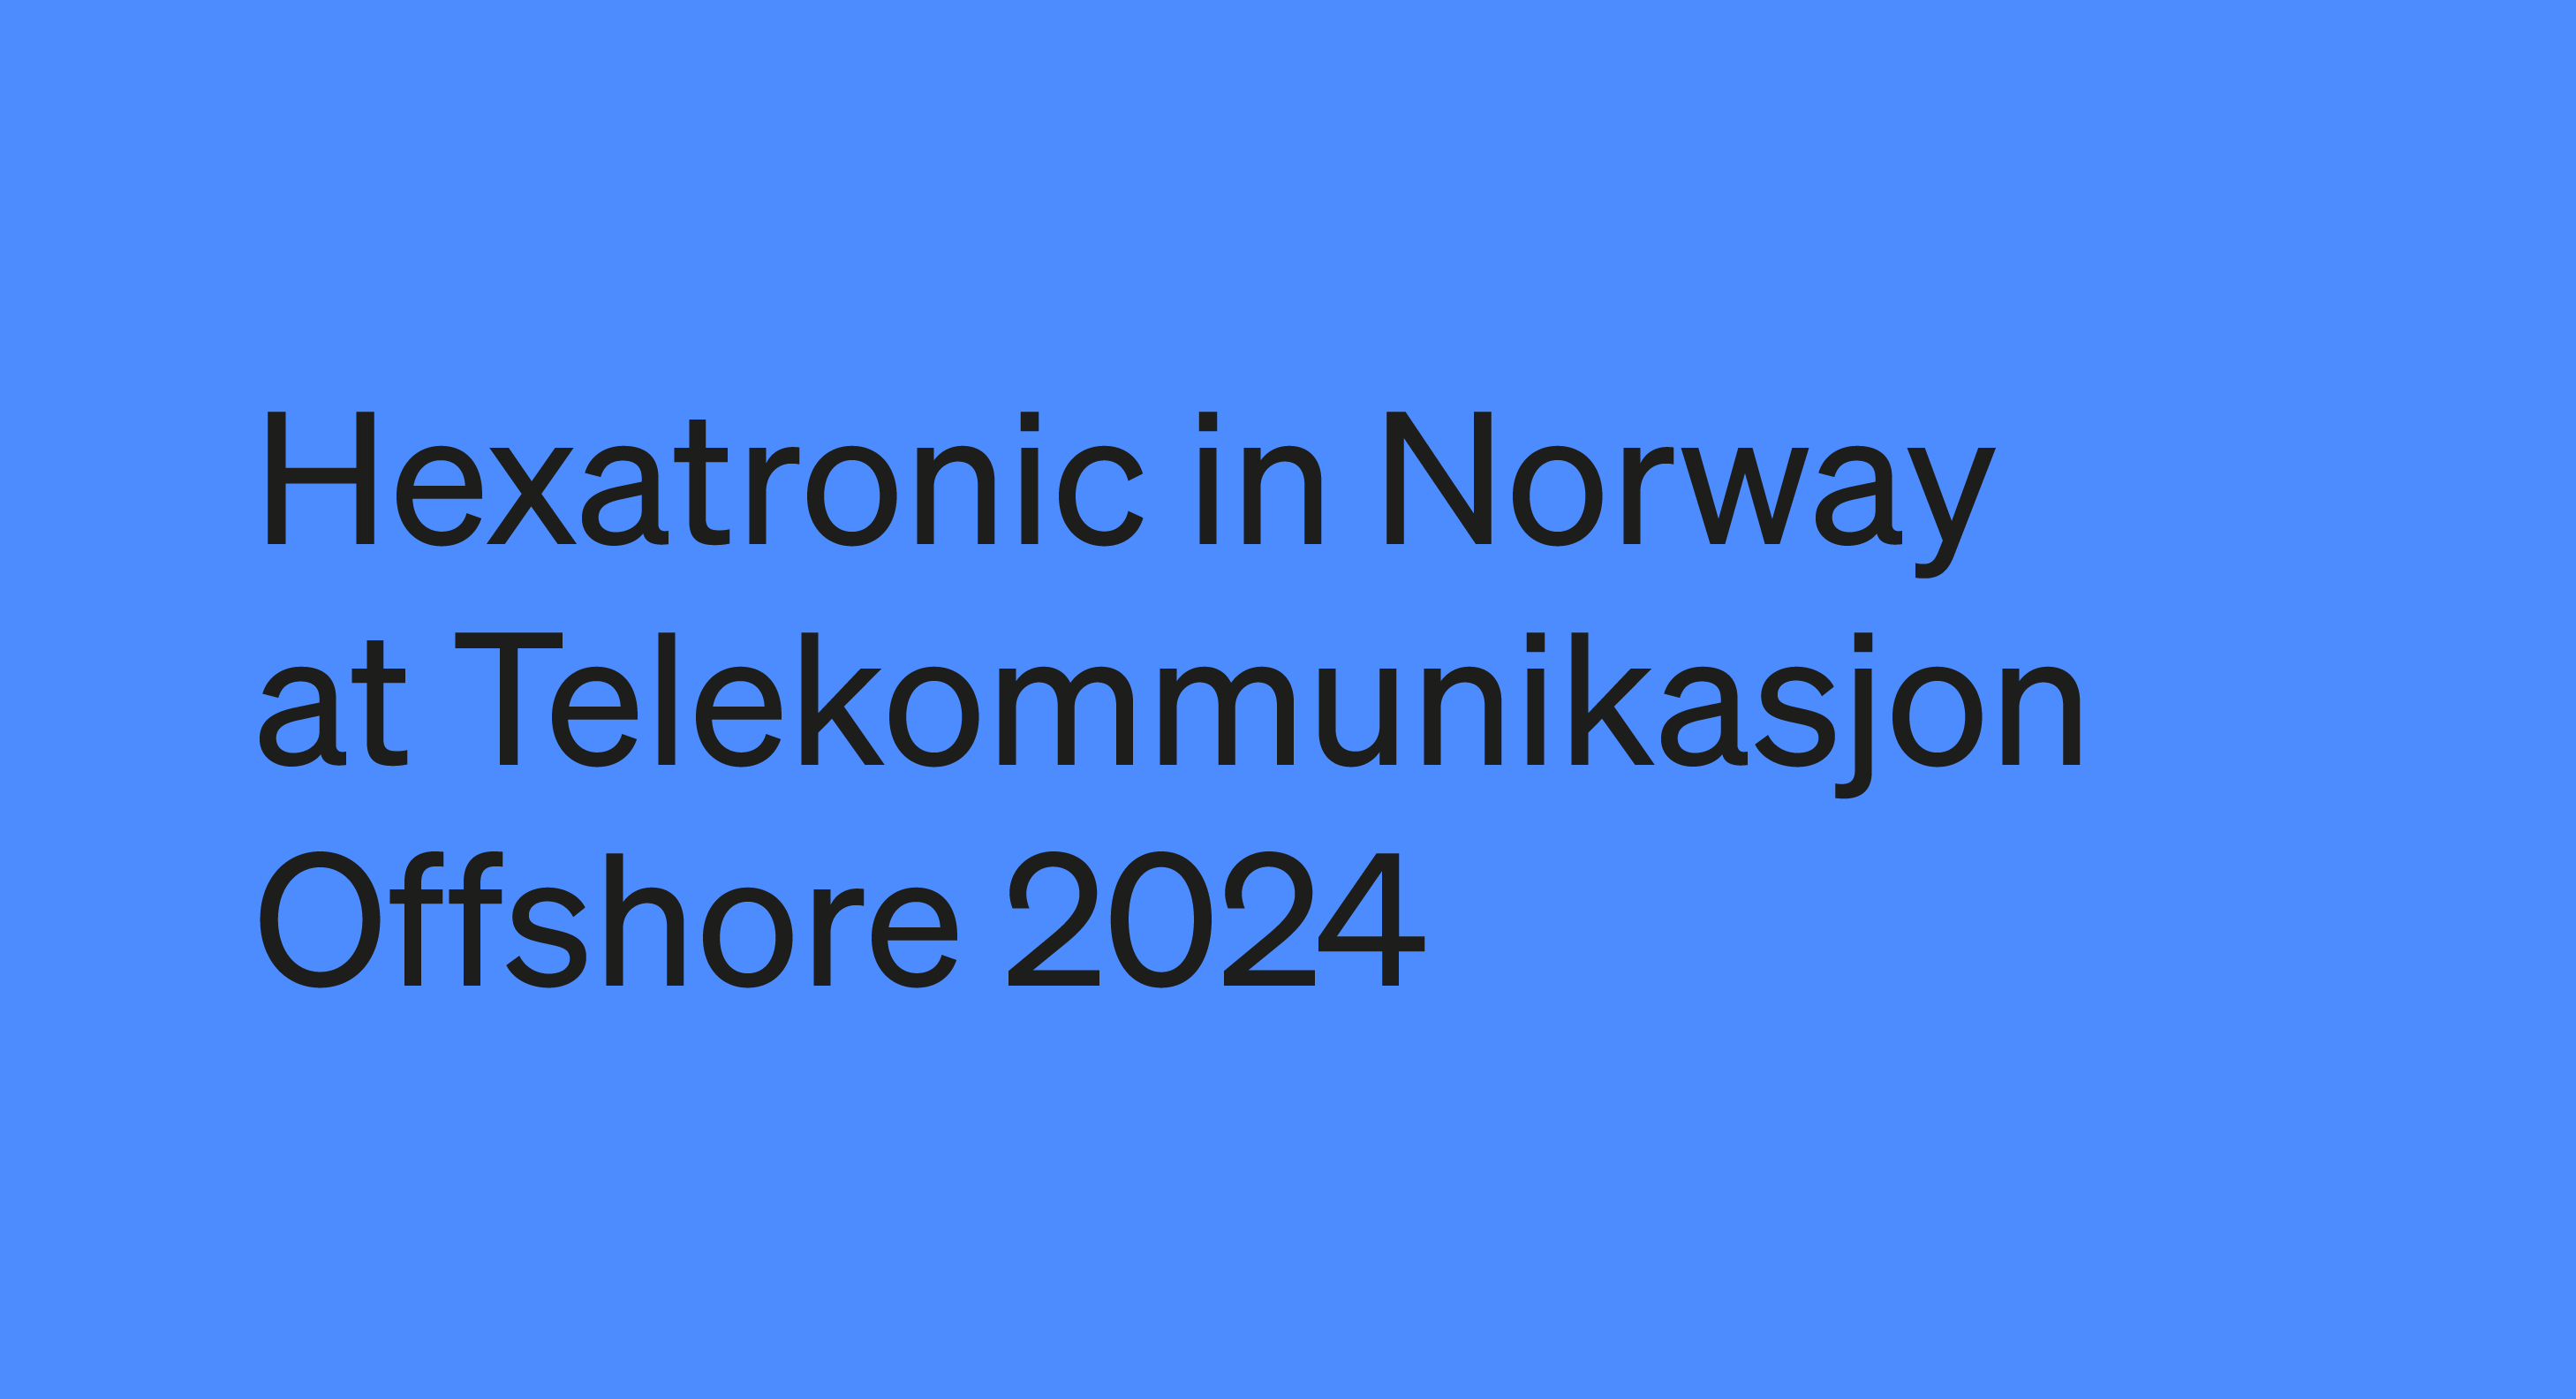 Telekommunikasjon Offshore 2024